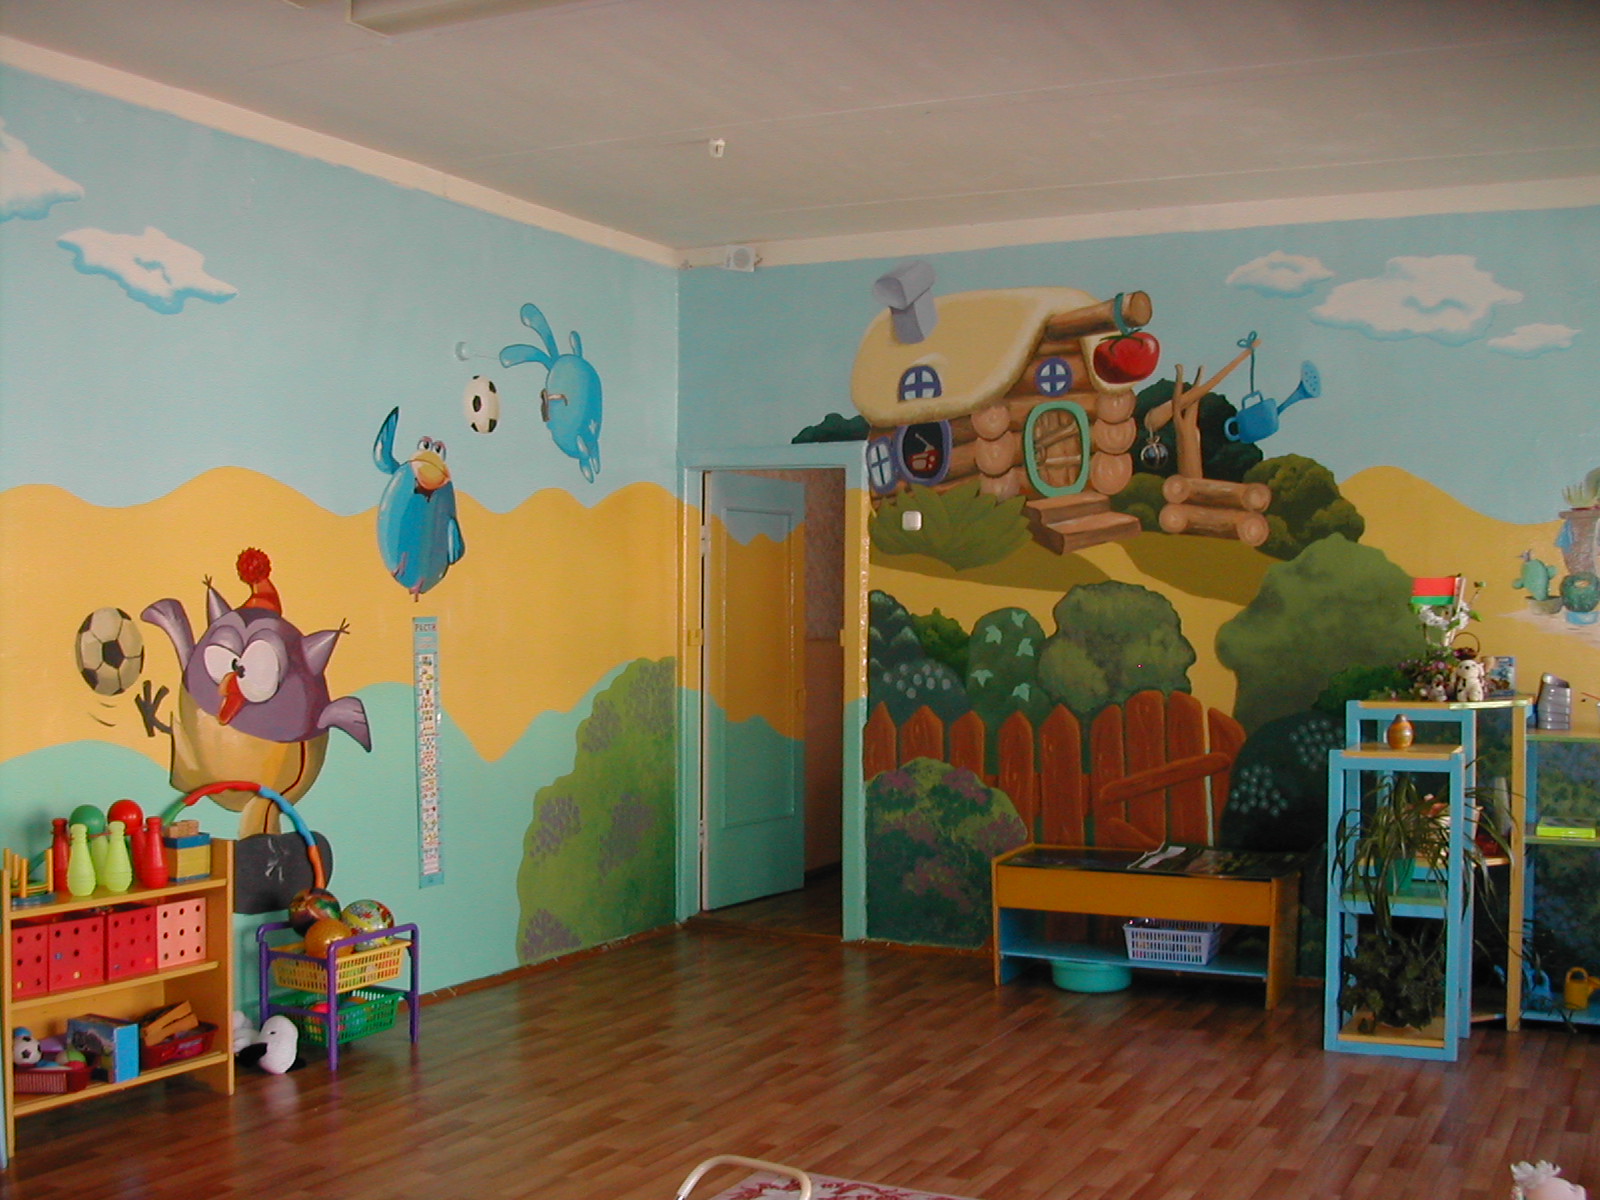 Оформление в детском саду в коридоре